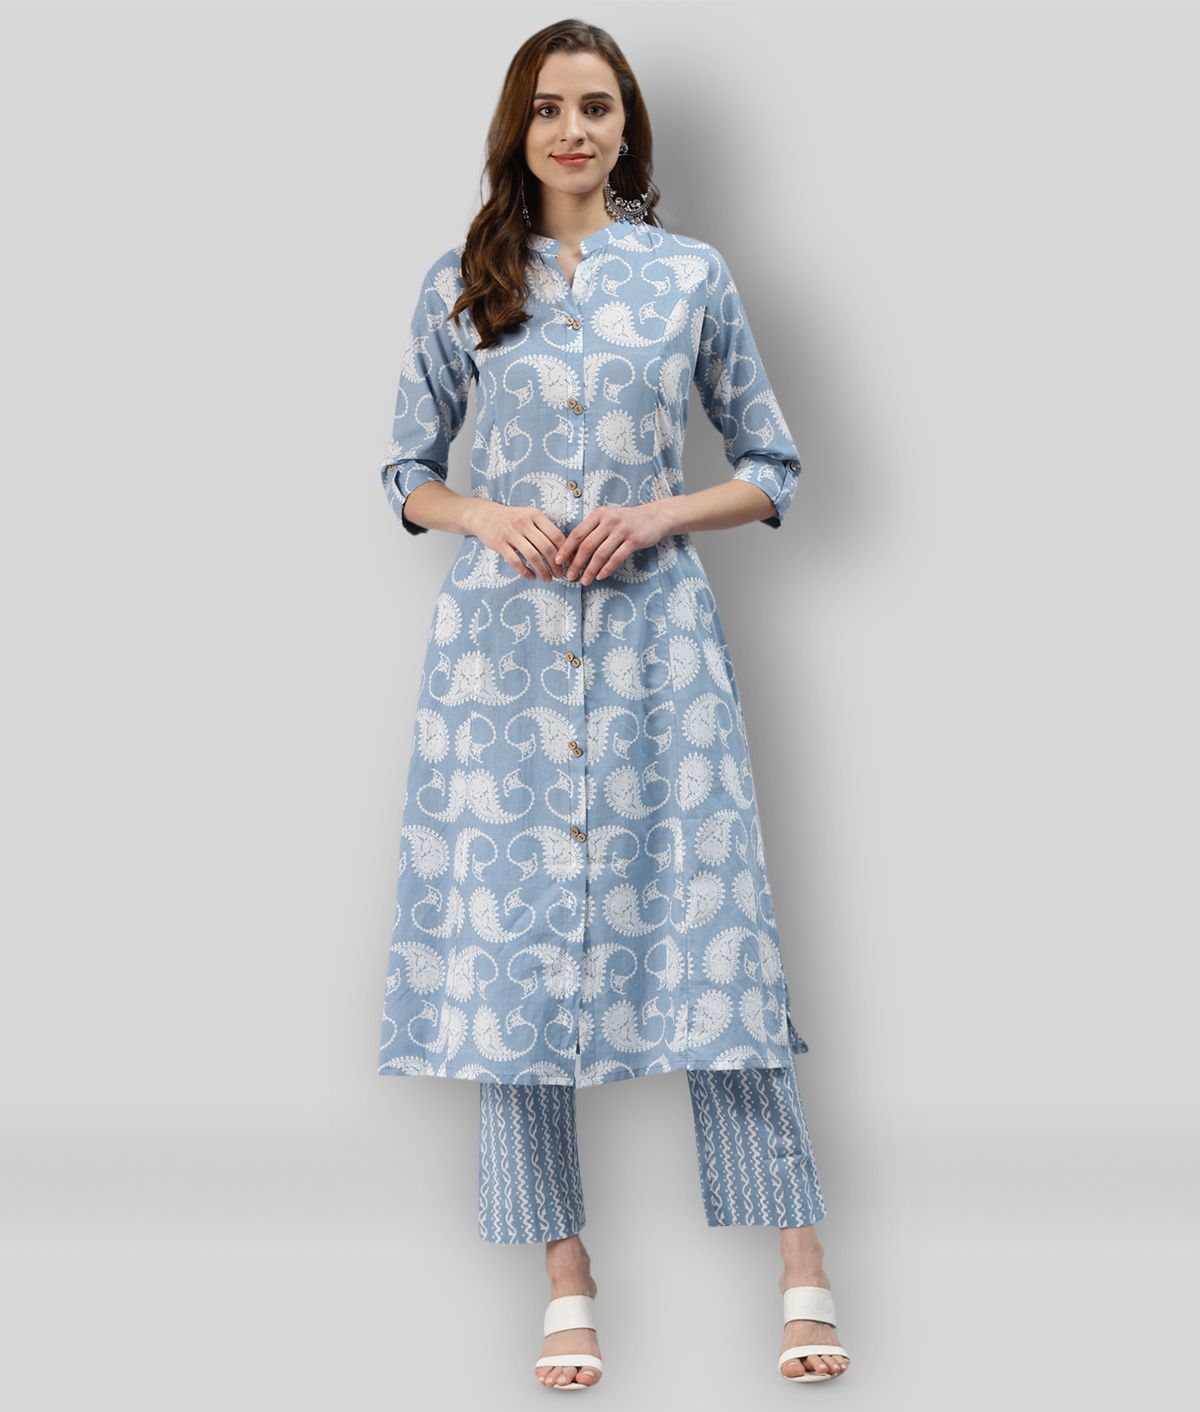     			Divena - Multicolor Front Slit Cotton Women's Stitched Salwar Suit ( Pack of 1 )